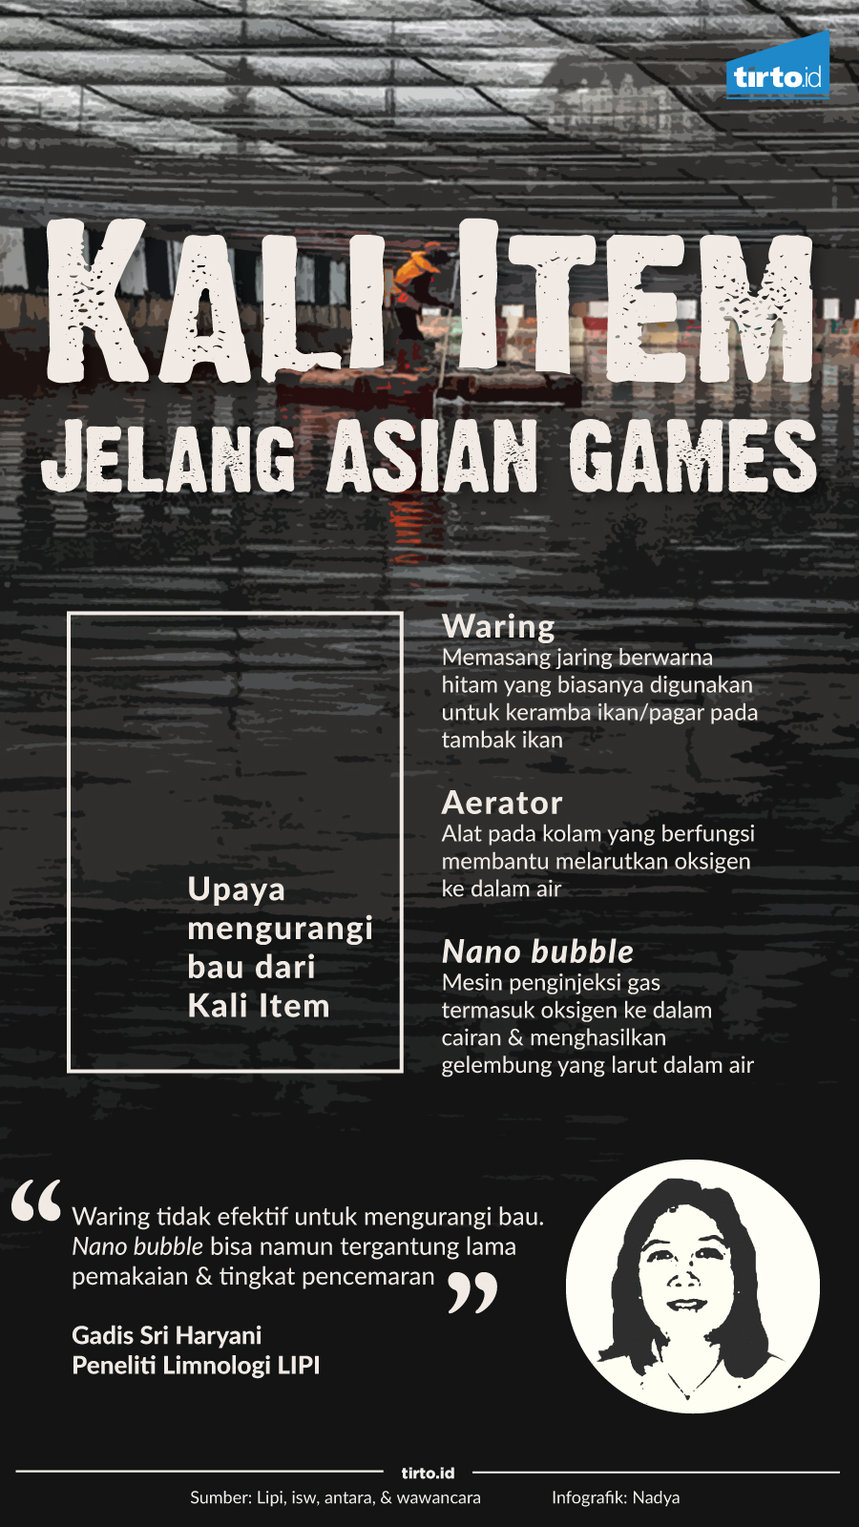 Infografik Kali Item Jelang Asian Games